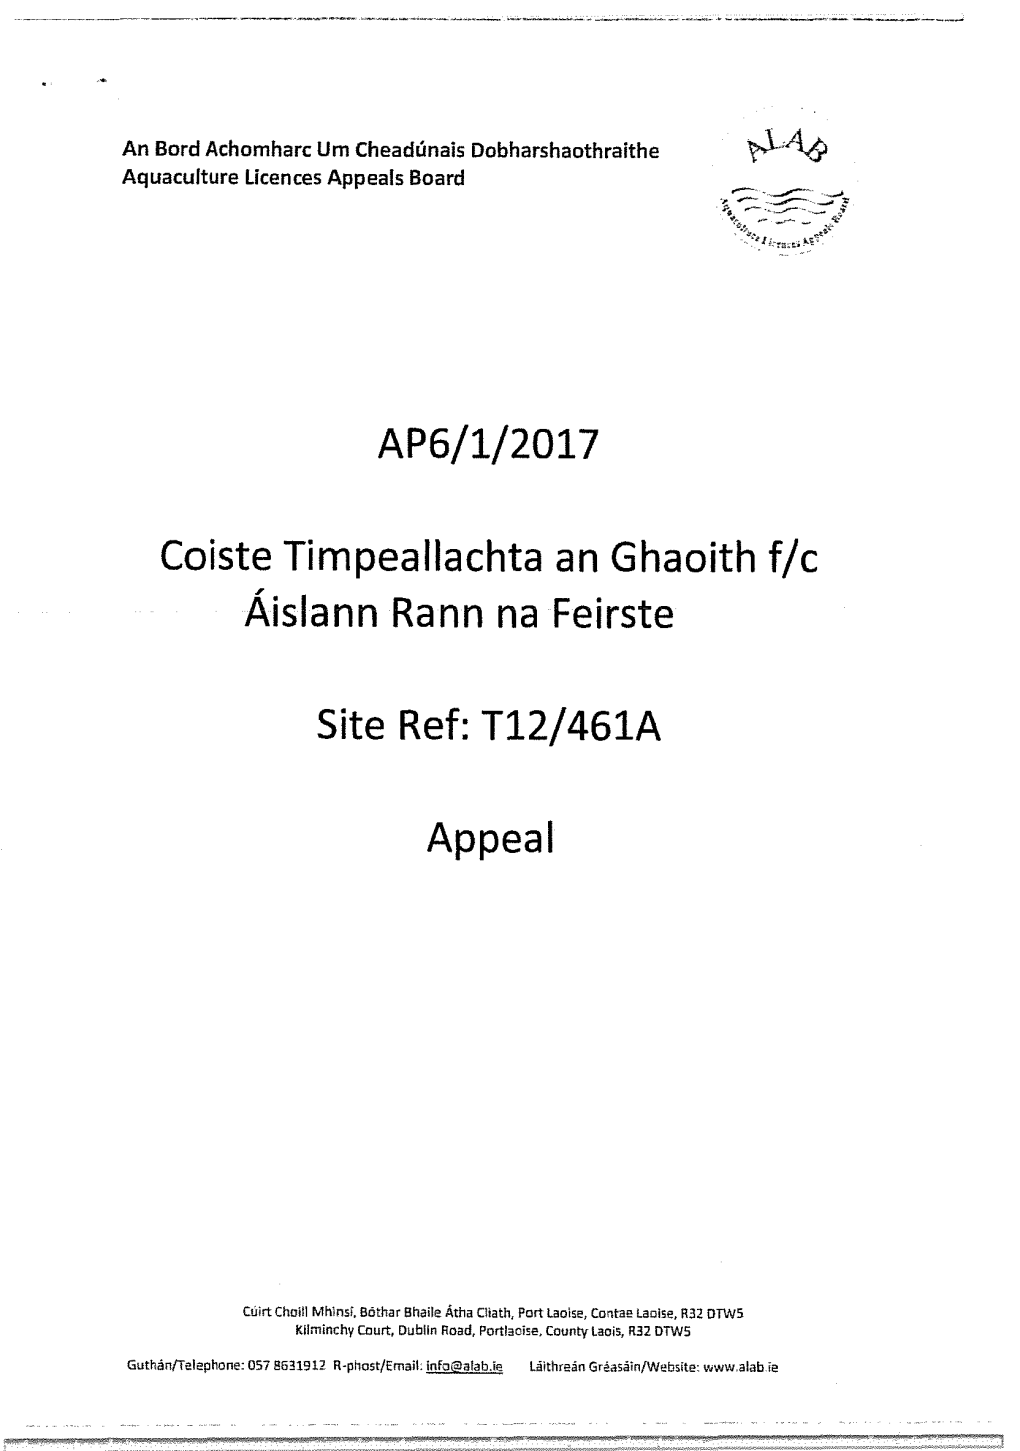 AP6/1/2017 Coiste Timpeallachta an Ghaoith F/C Aislann Rann Na Feirste